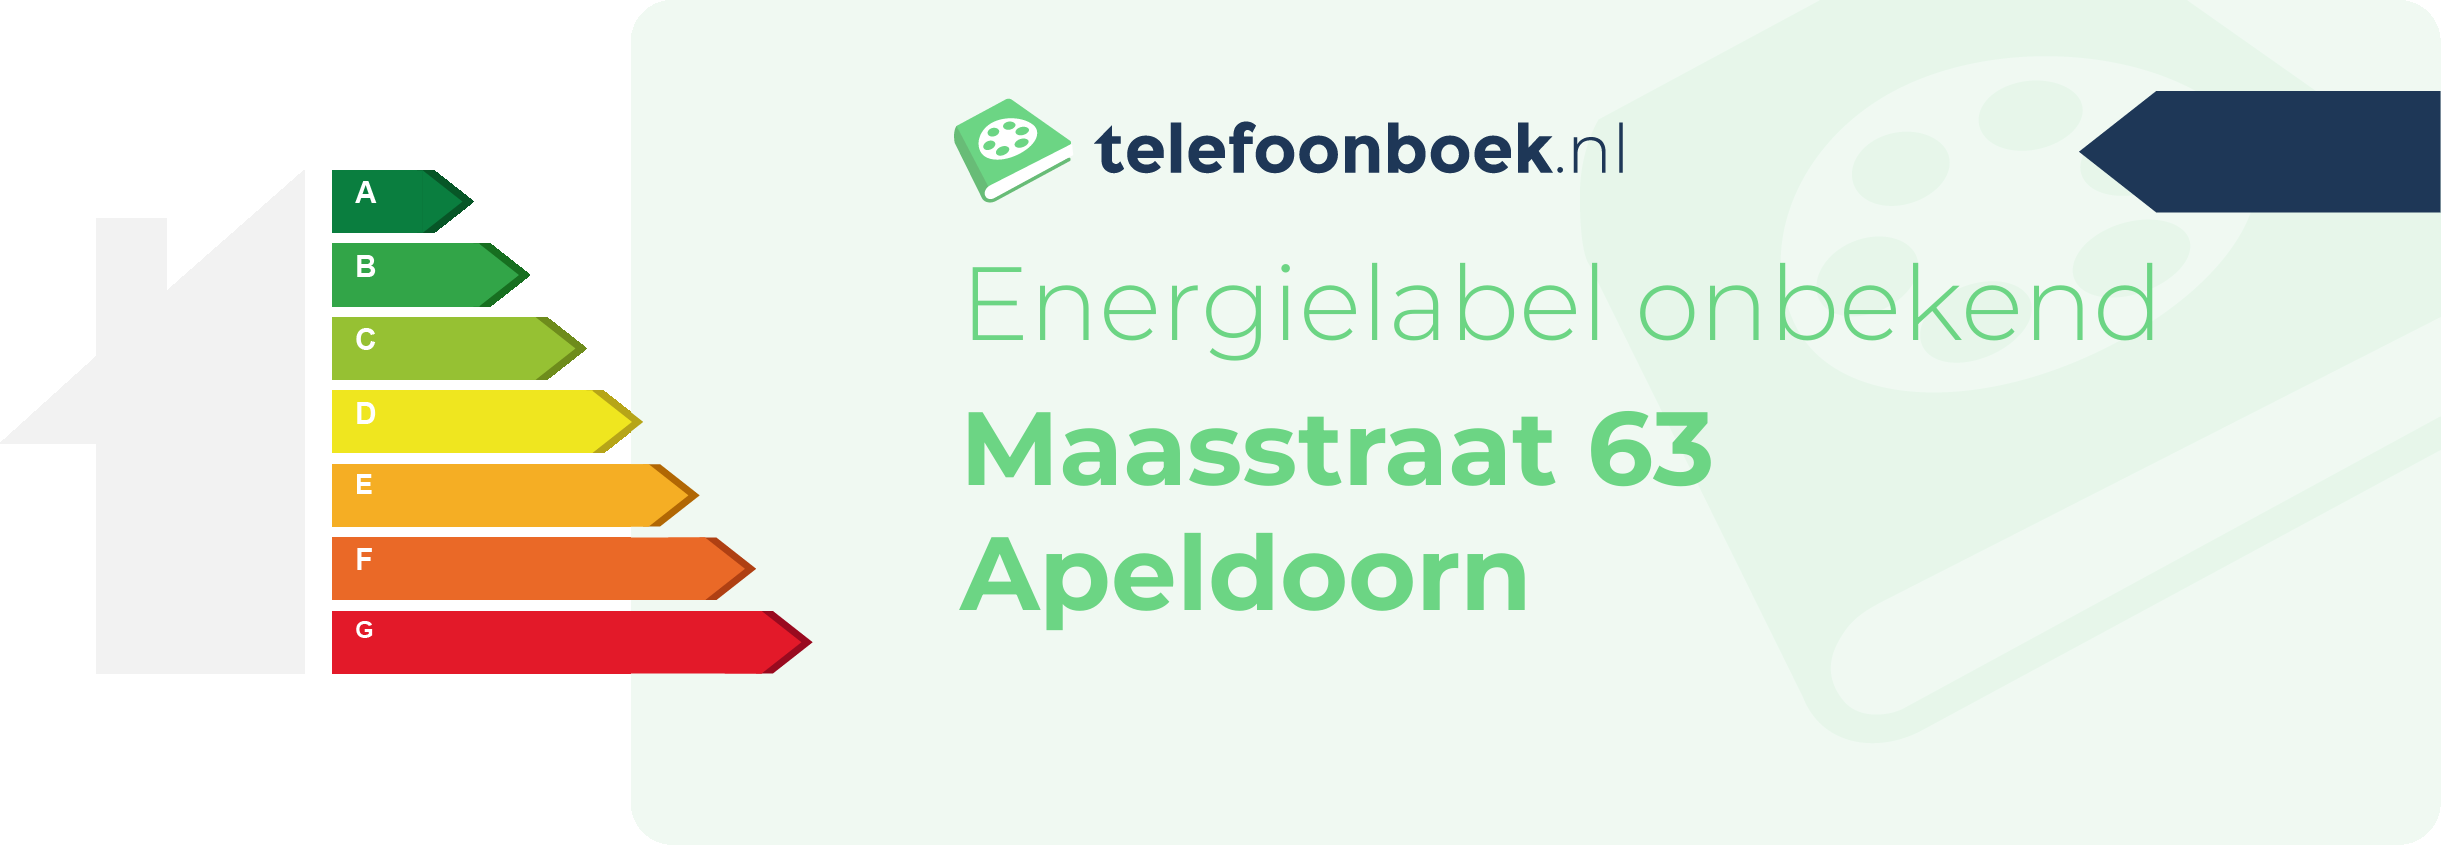 Energielabel Maasstraat 63 Apeldoorn